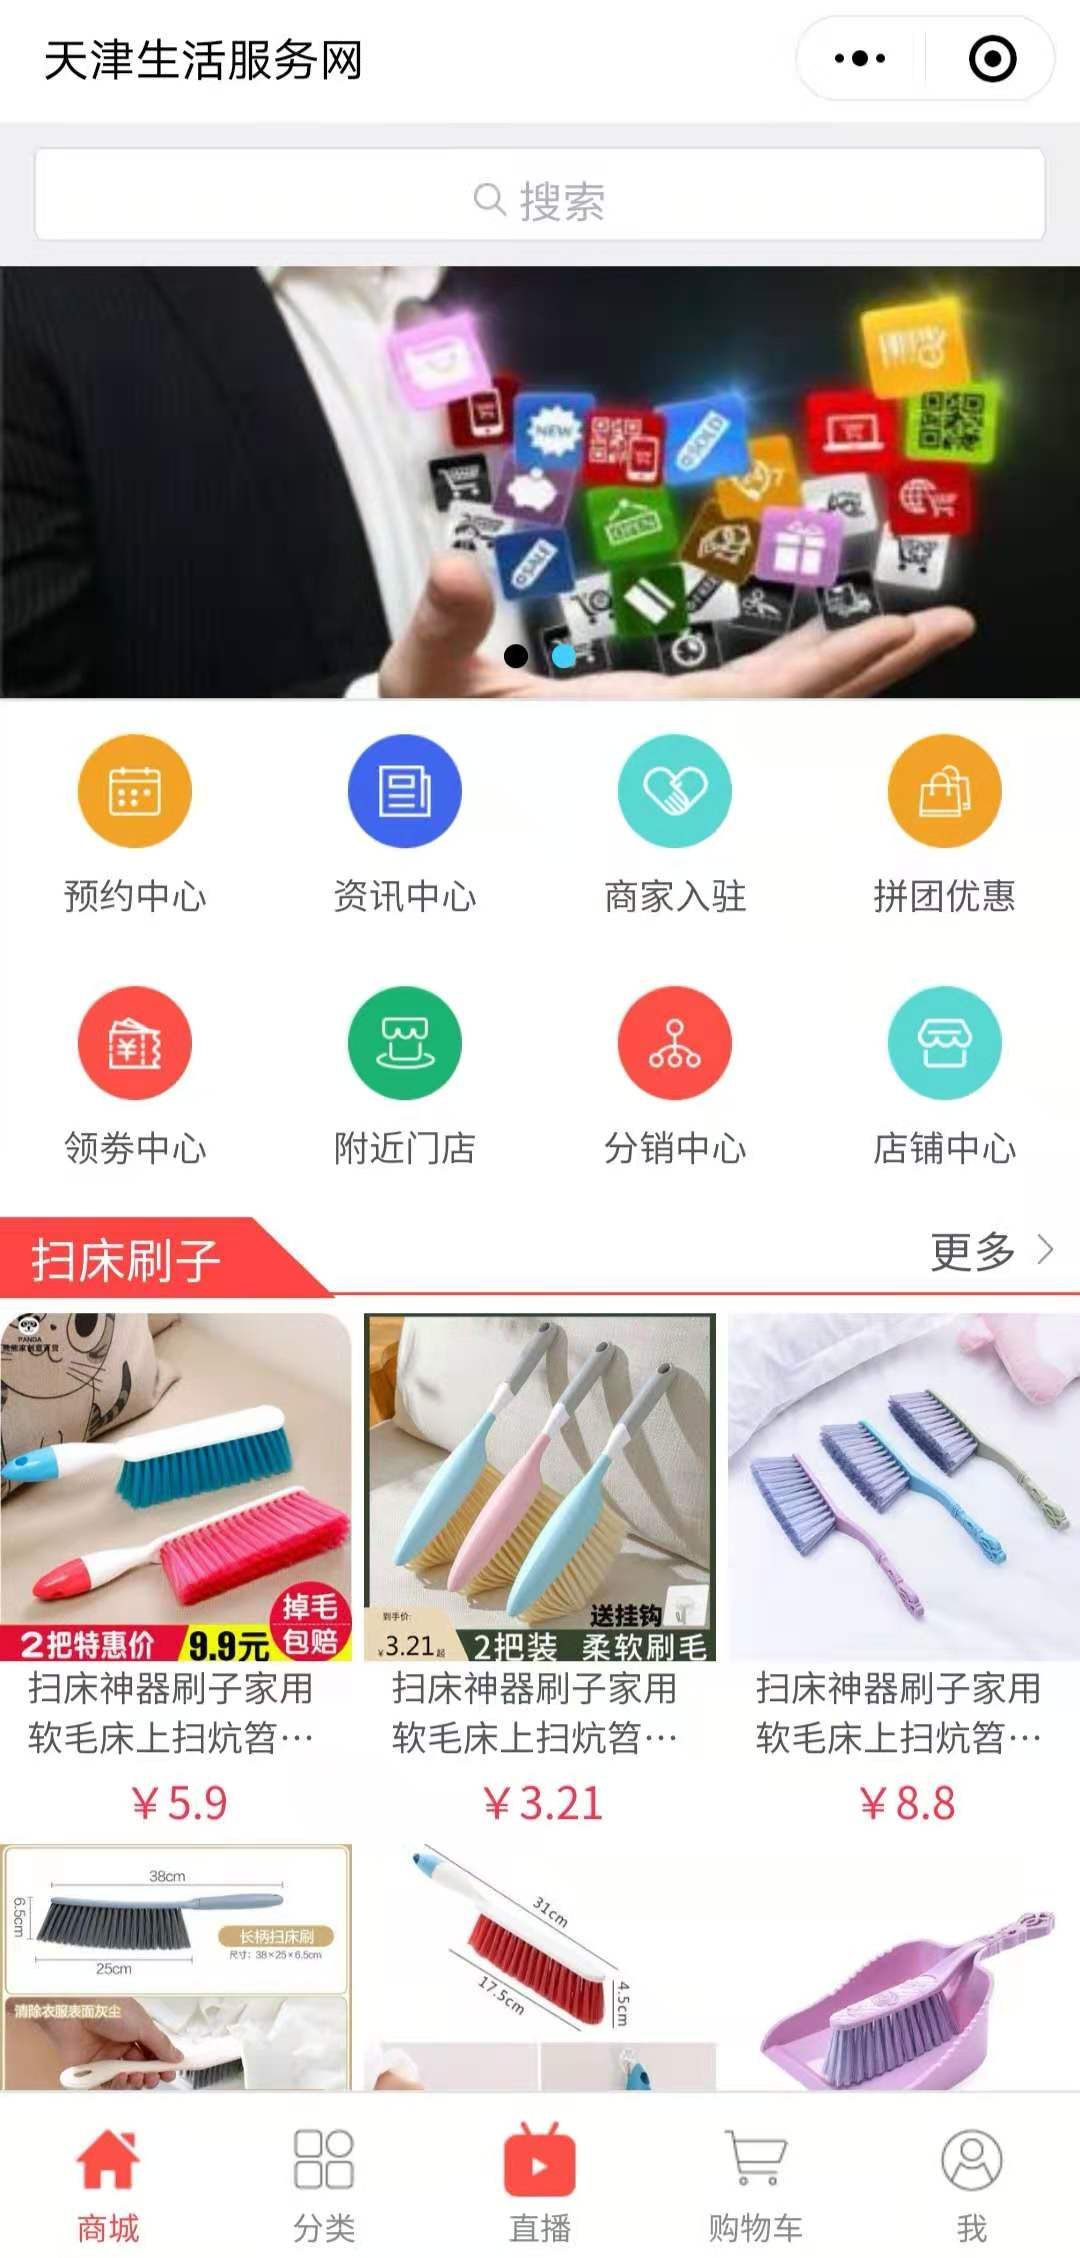 天津生活服务网整合行业招商运营资源的专业平台-阳泉之家